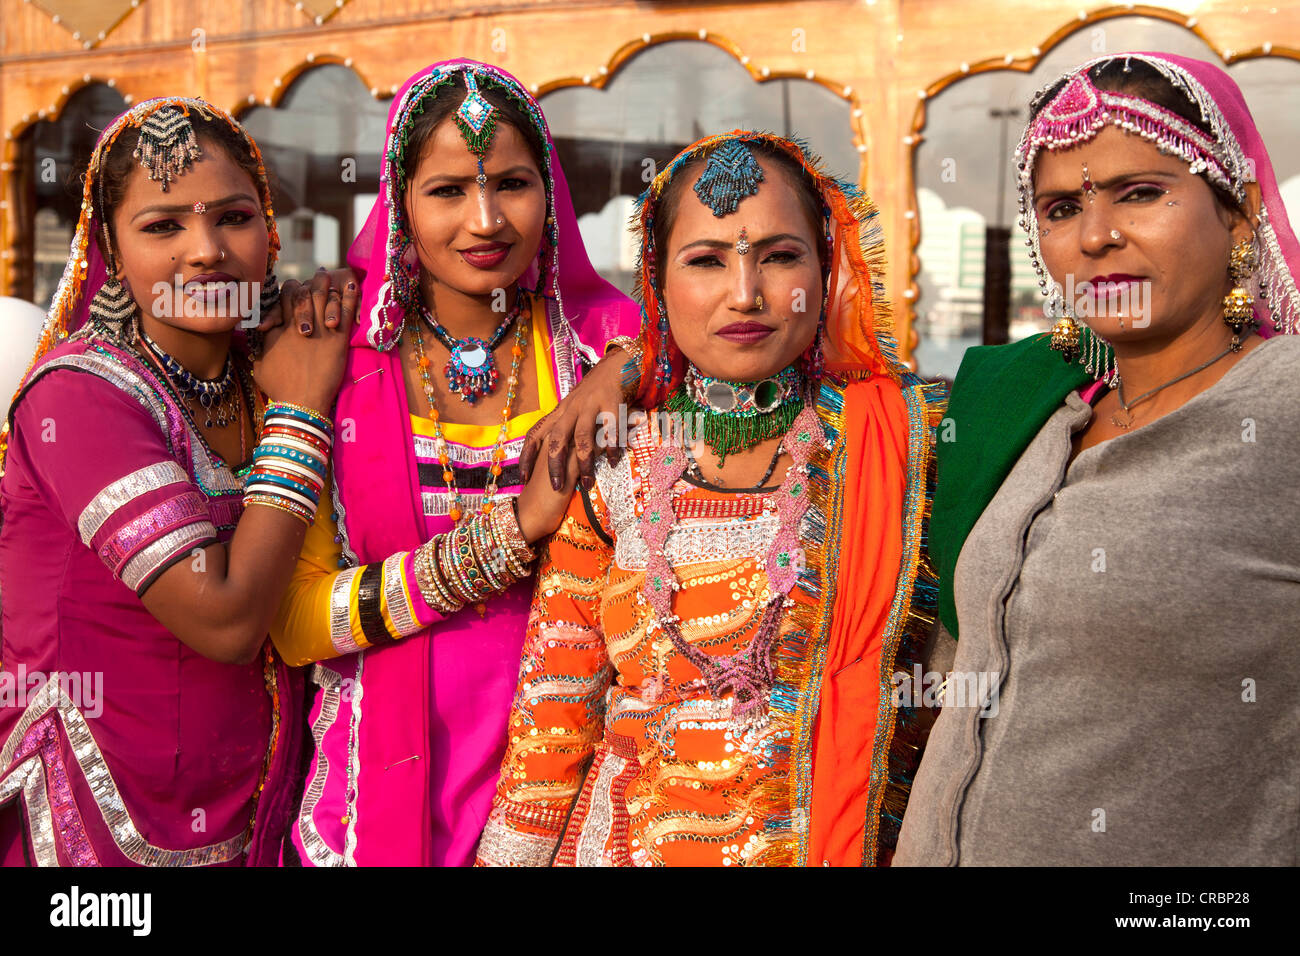 Danseurs indiens portant des vêtements traditionnels, des travailleurs invités du Rajasthan à Dubaï, Émirats arabes unis, au Moyen-Orient, en Asie Banque D'Images